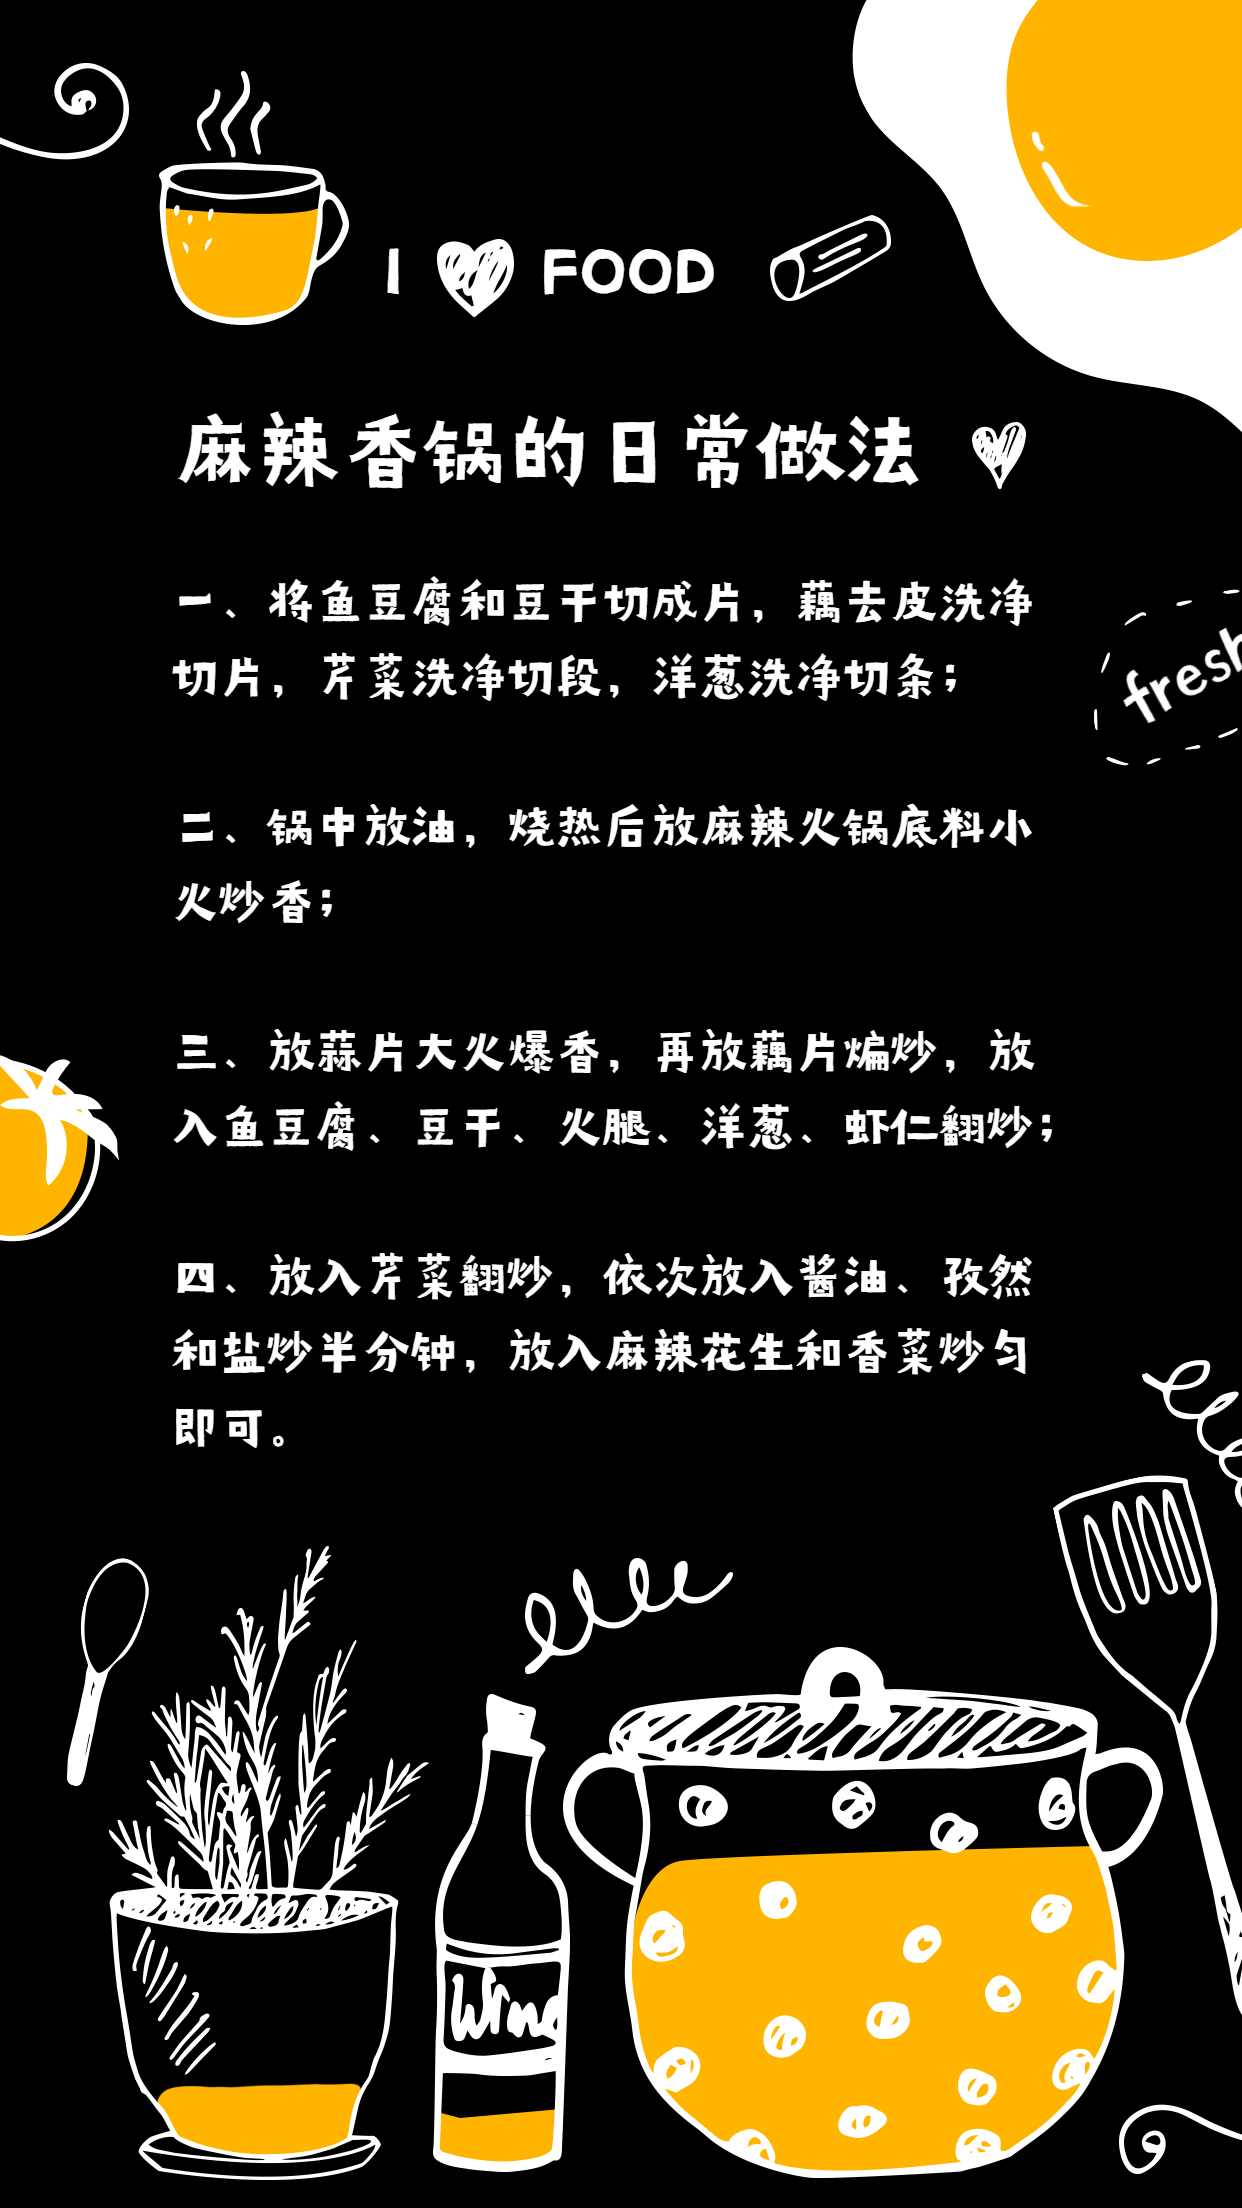 麻辣香锅菜谱海报预览效果